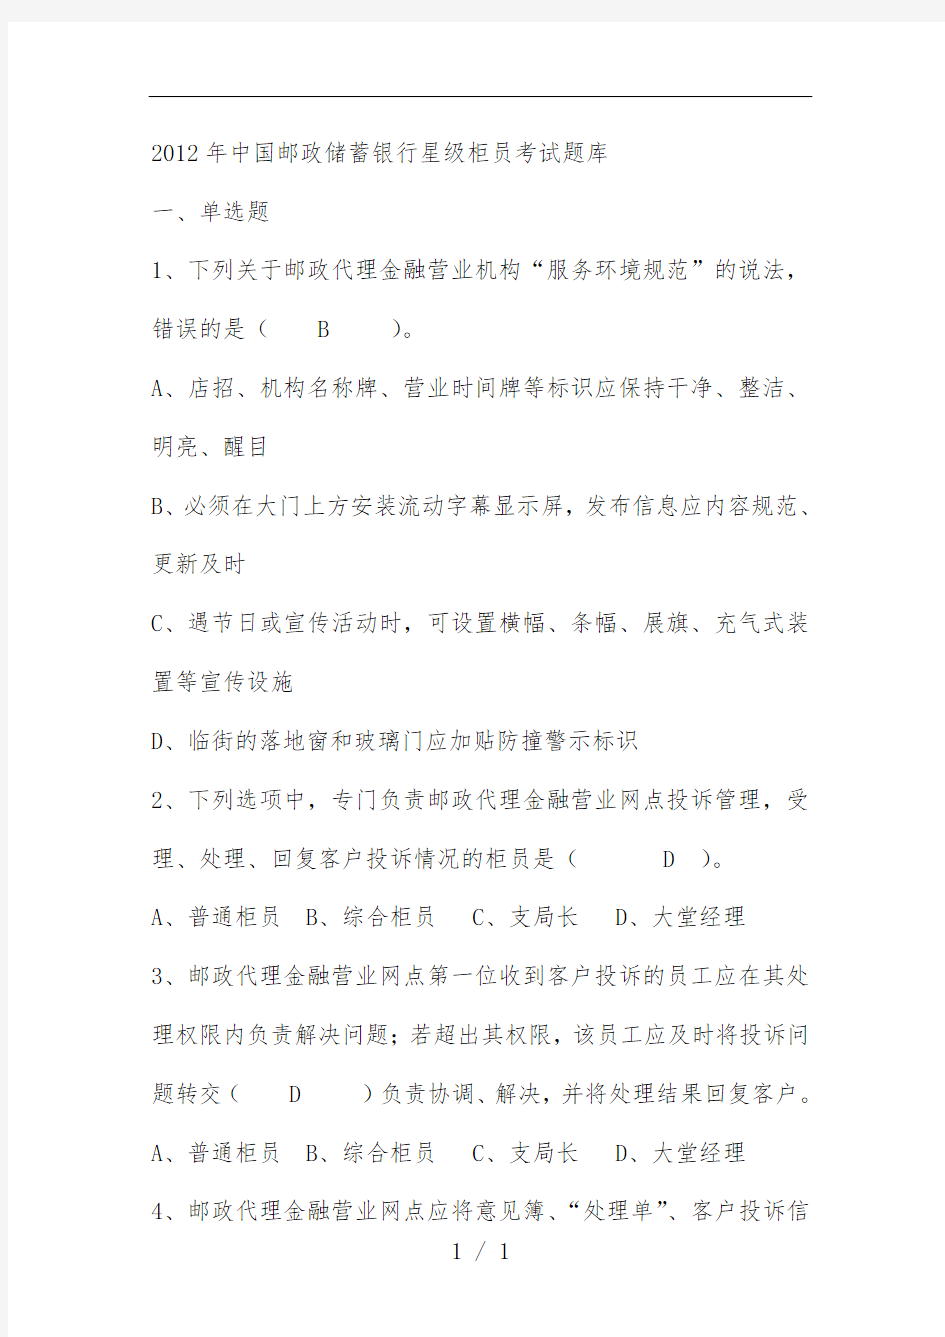 中国邮政储蓄银行星级柜员考试题库